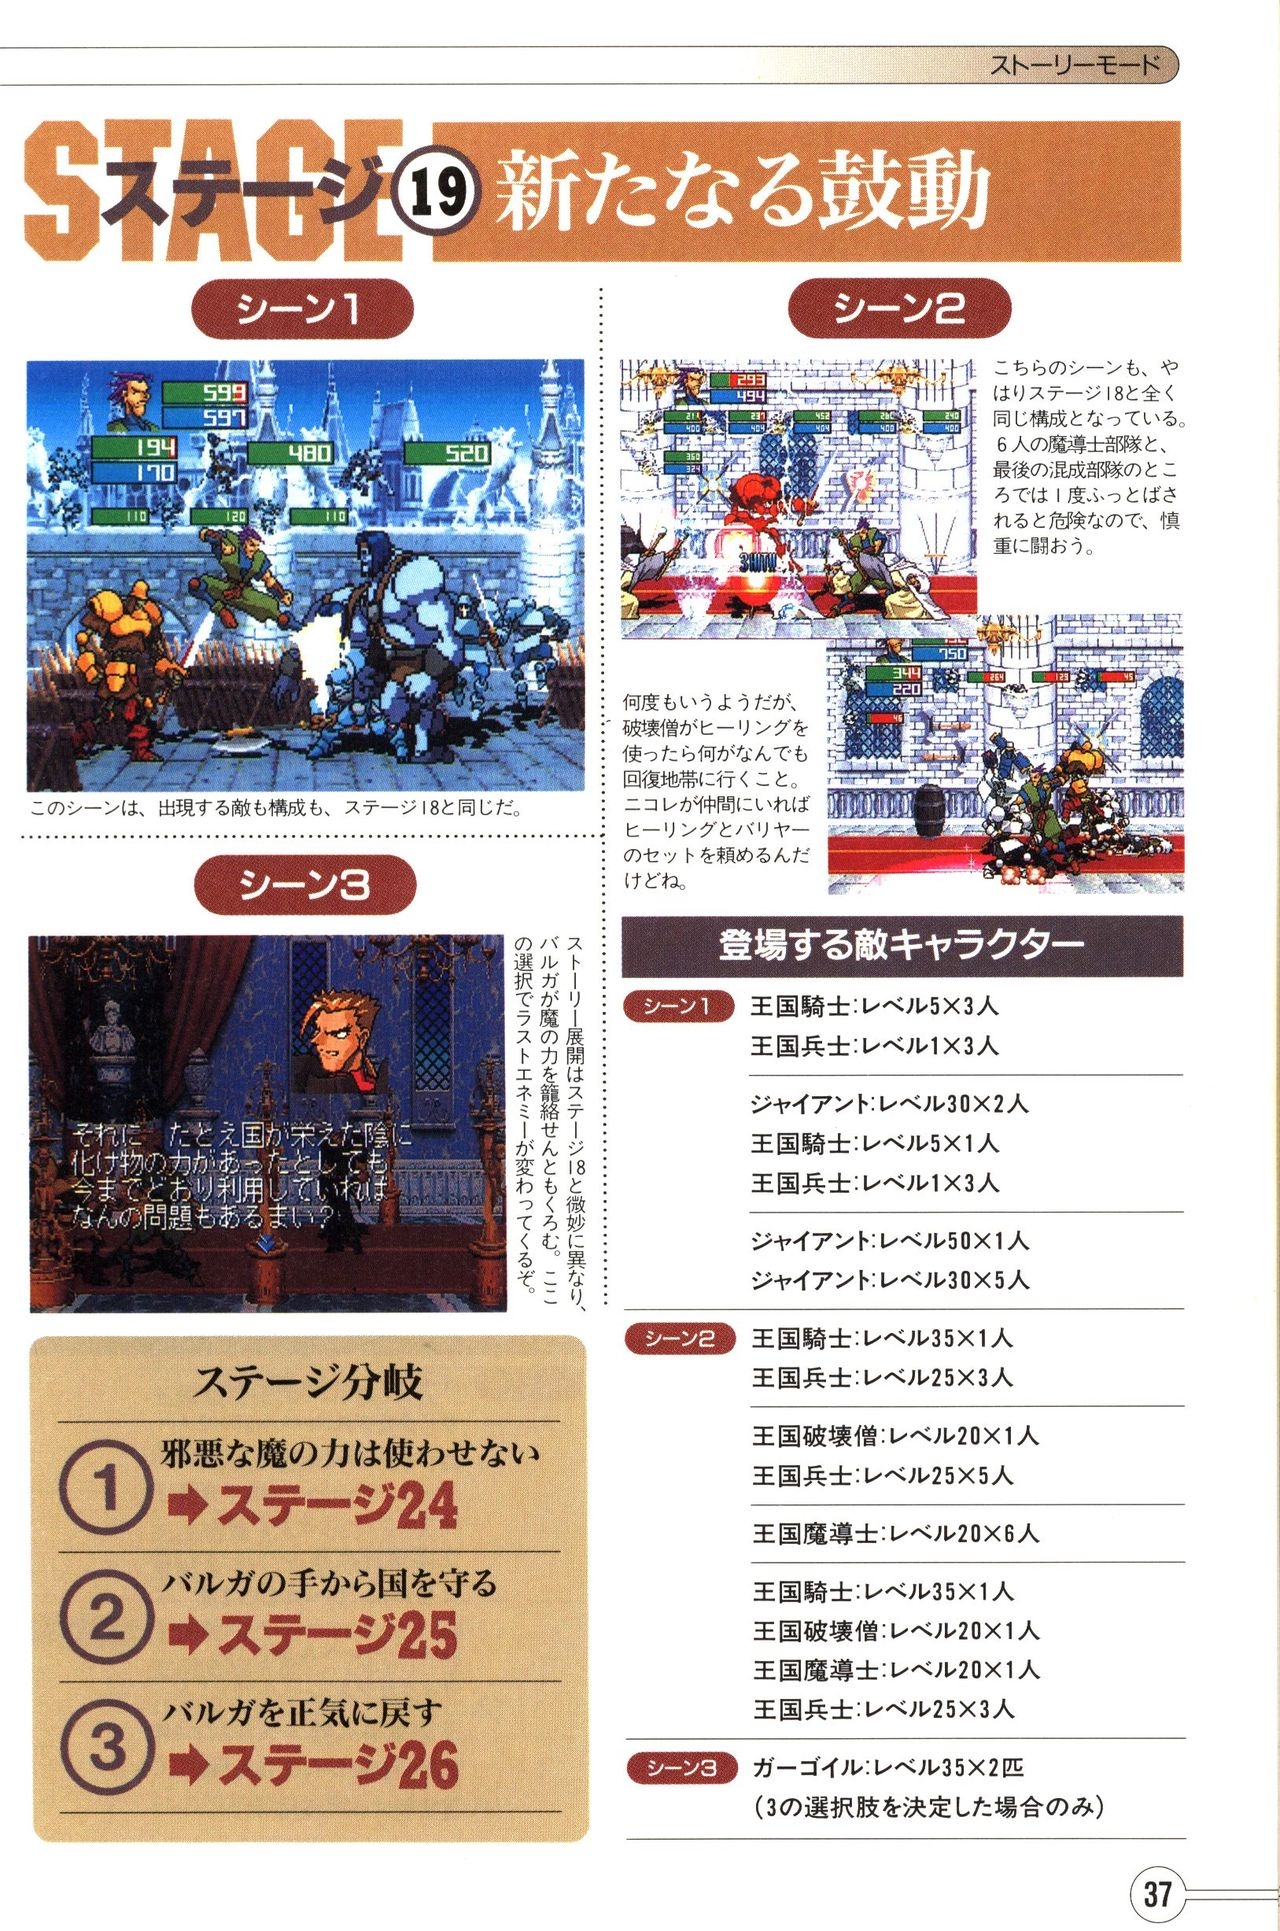 Guardian Heroes Perfect Guide (Sega Saturn magazine books) 39